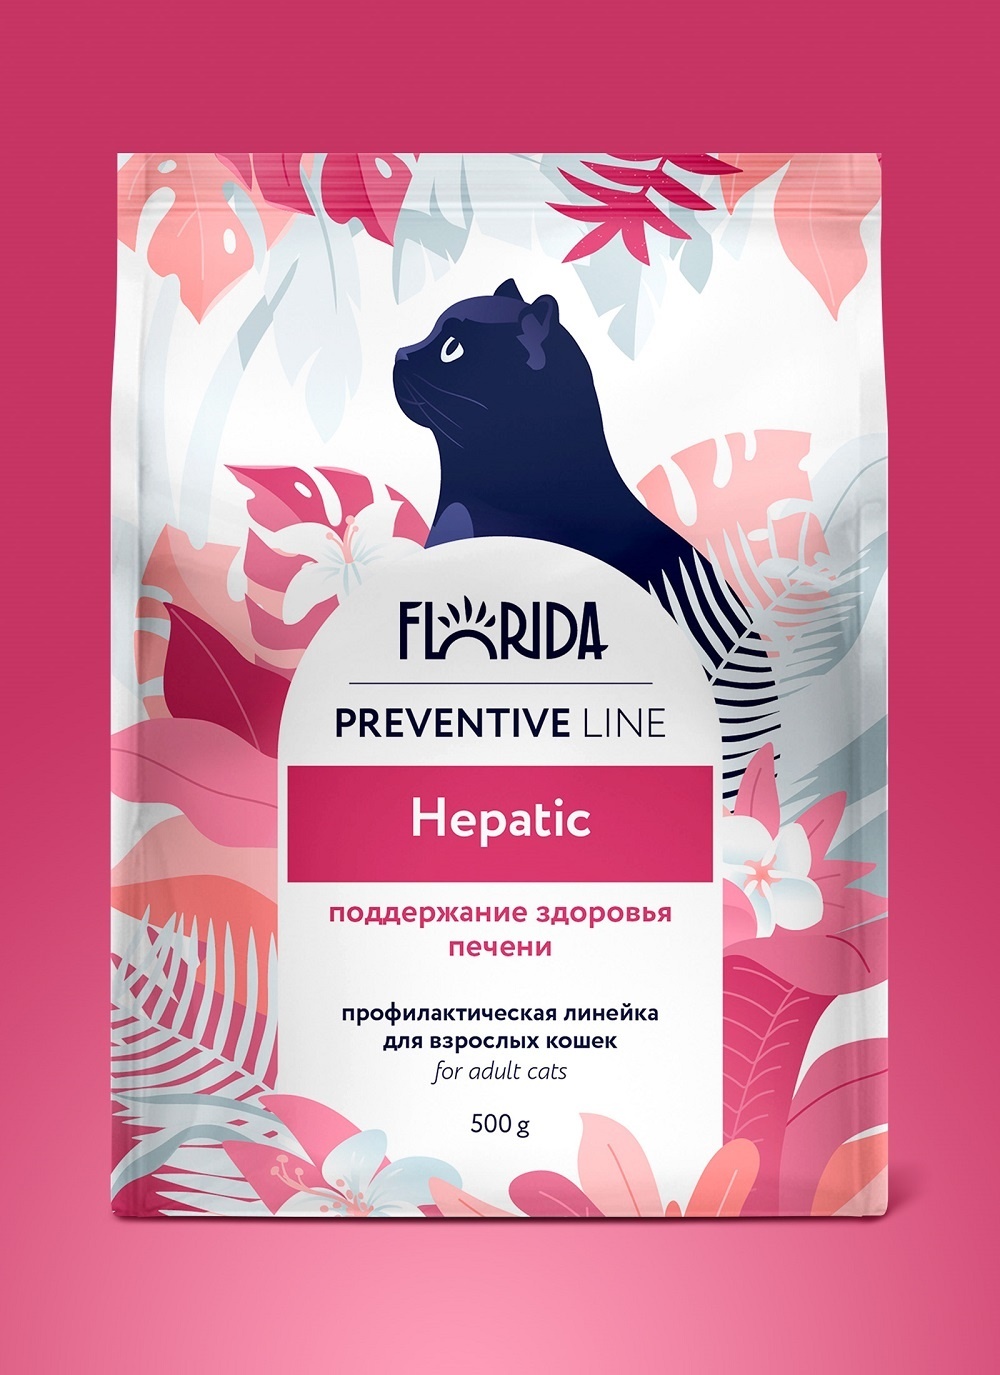 Florida Preventive Line Florida Preventive Line hepatic сухой корм для кошек Поддержание здоровья печени (500 г)